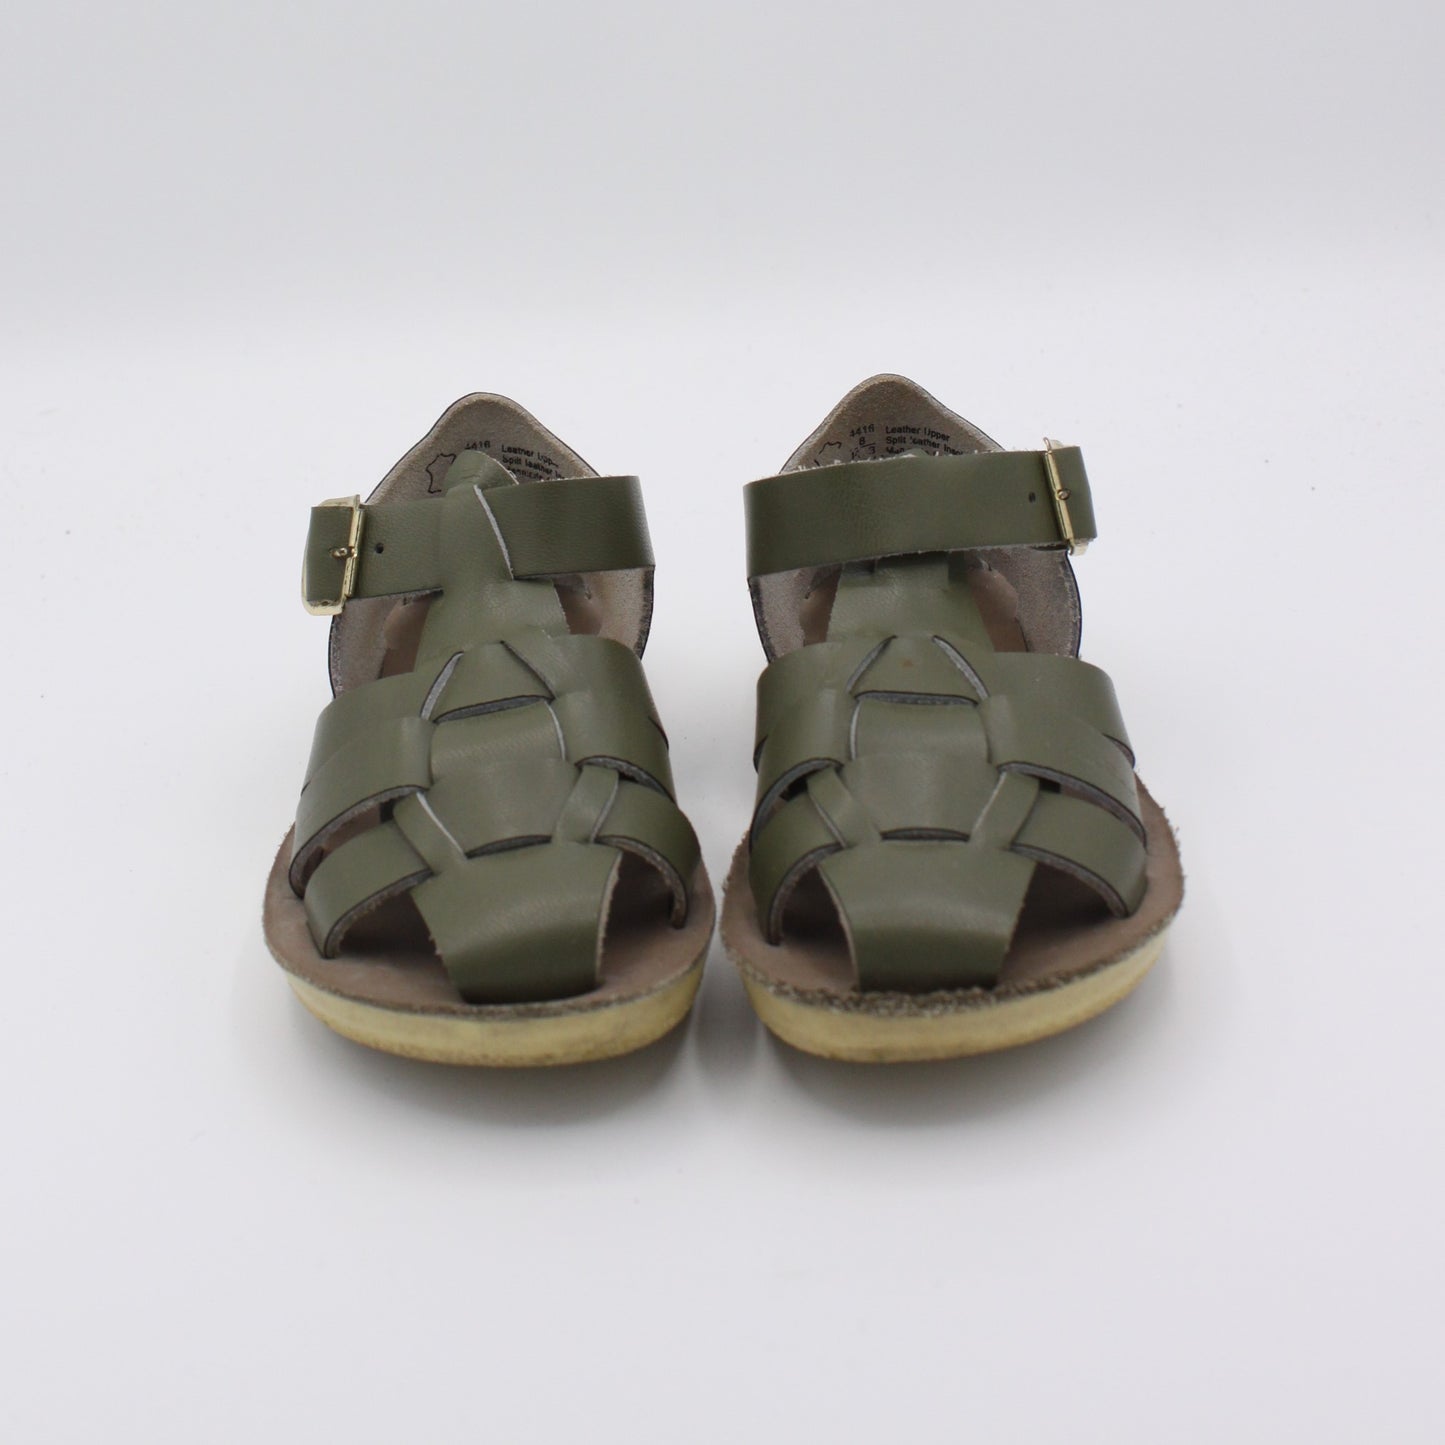 Pre-loved Sandals (EU24)